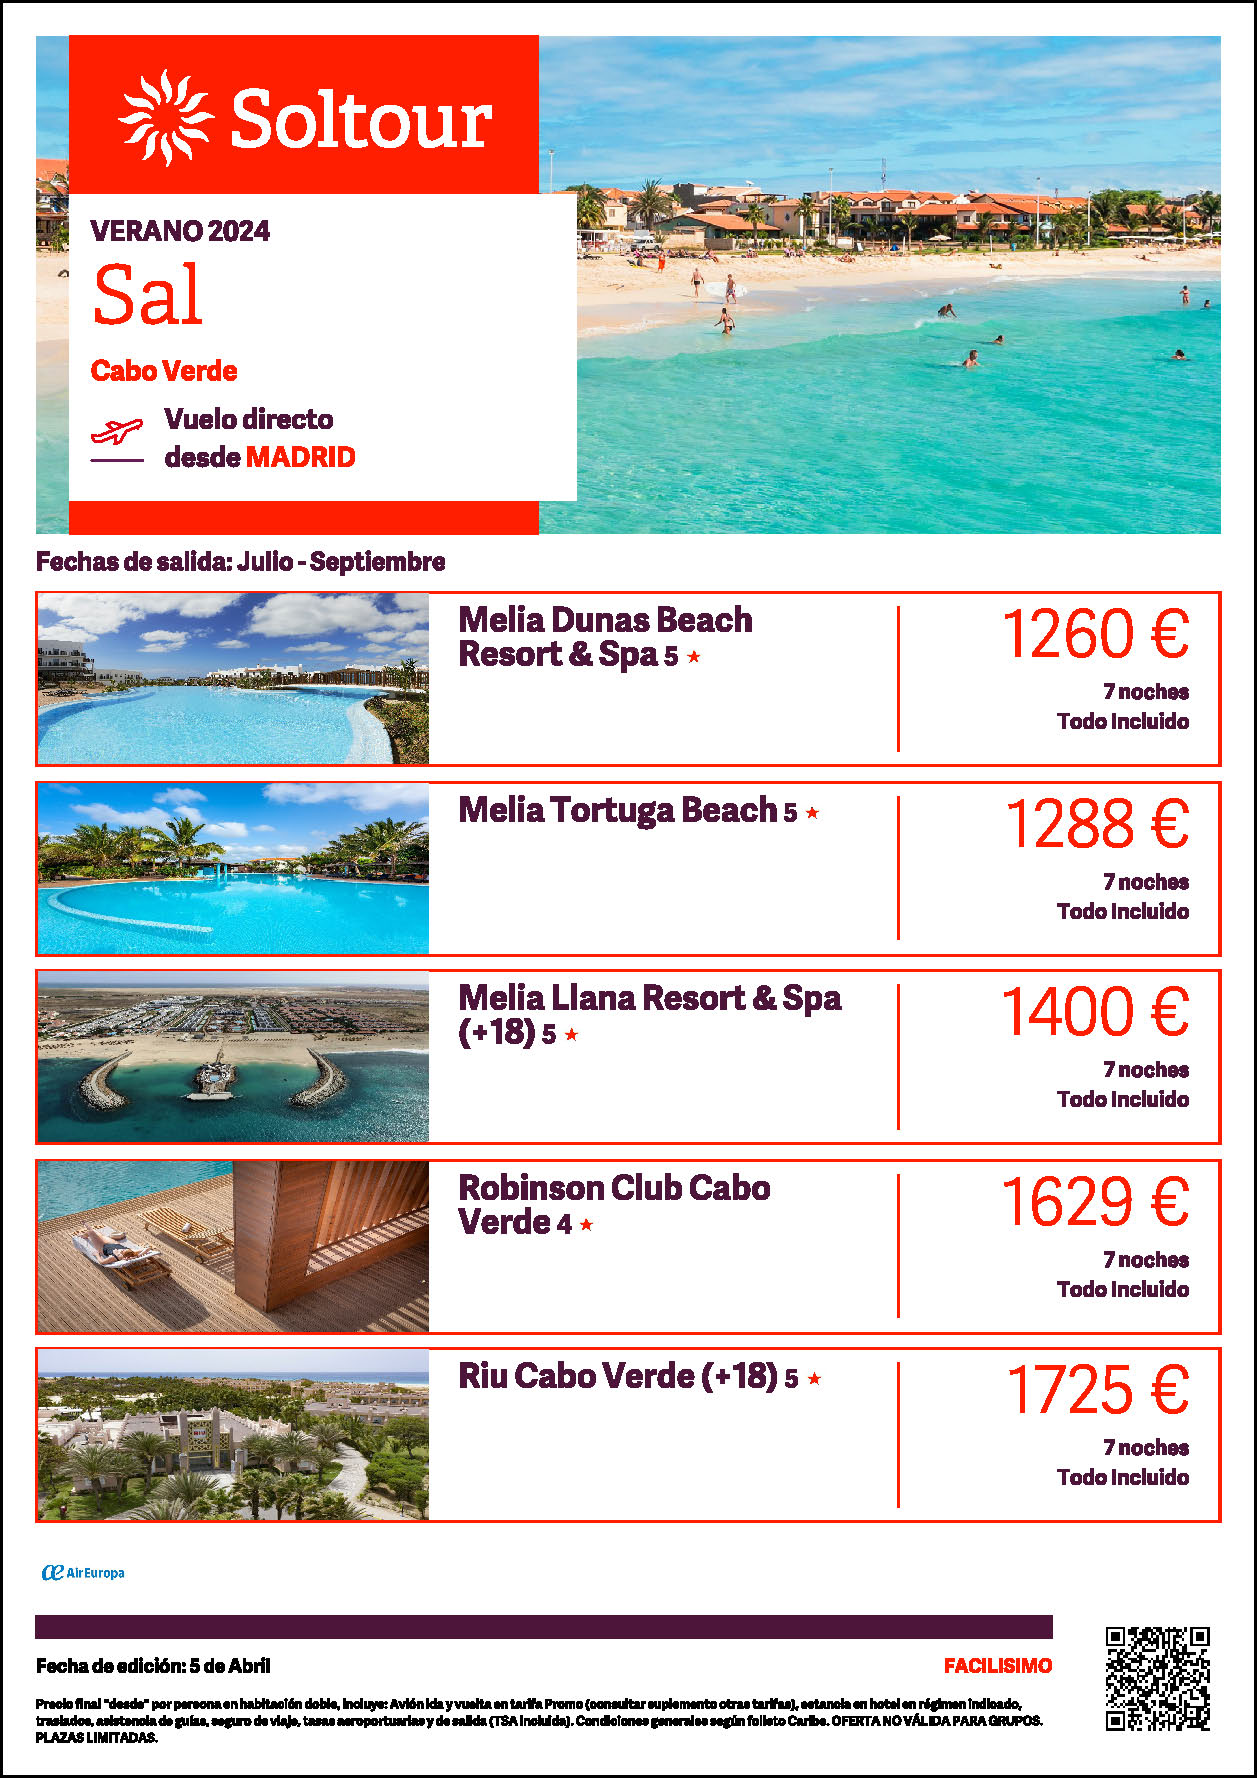 Oferta Soltour Estancia en Cabo Verde Isla de la Sal 8 dias Hotel 5 estrellas Todo Incluido salidas Verano 2024 vuelo directo desde Madrid